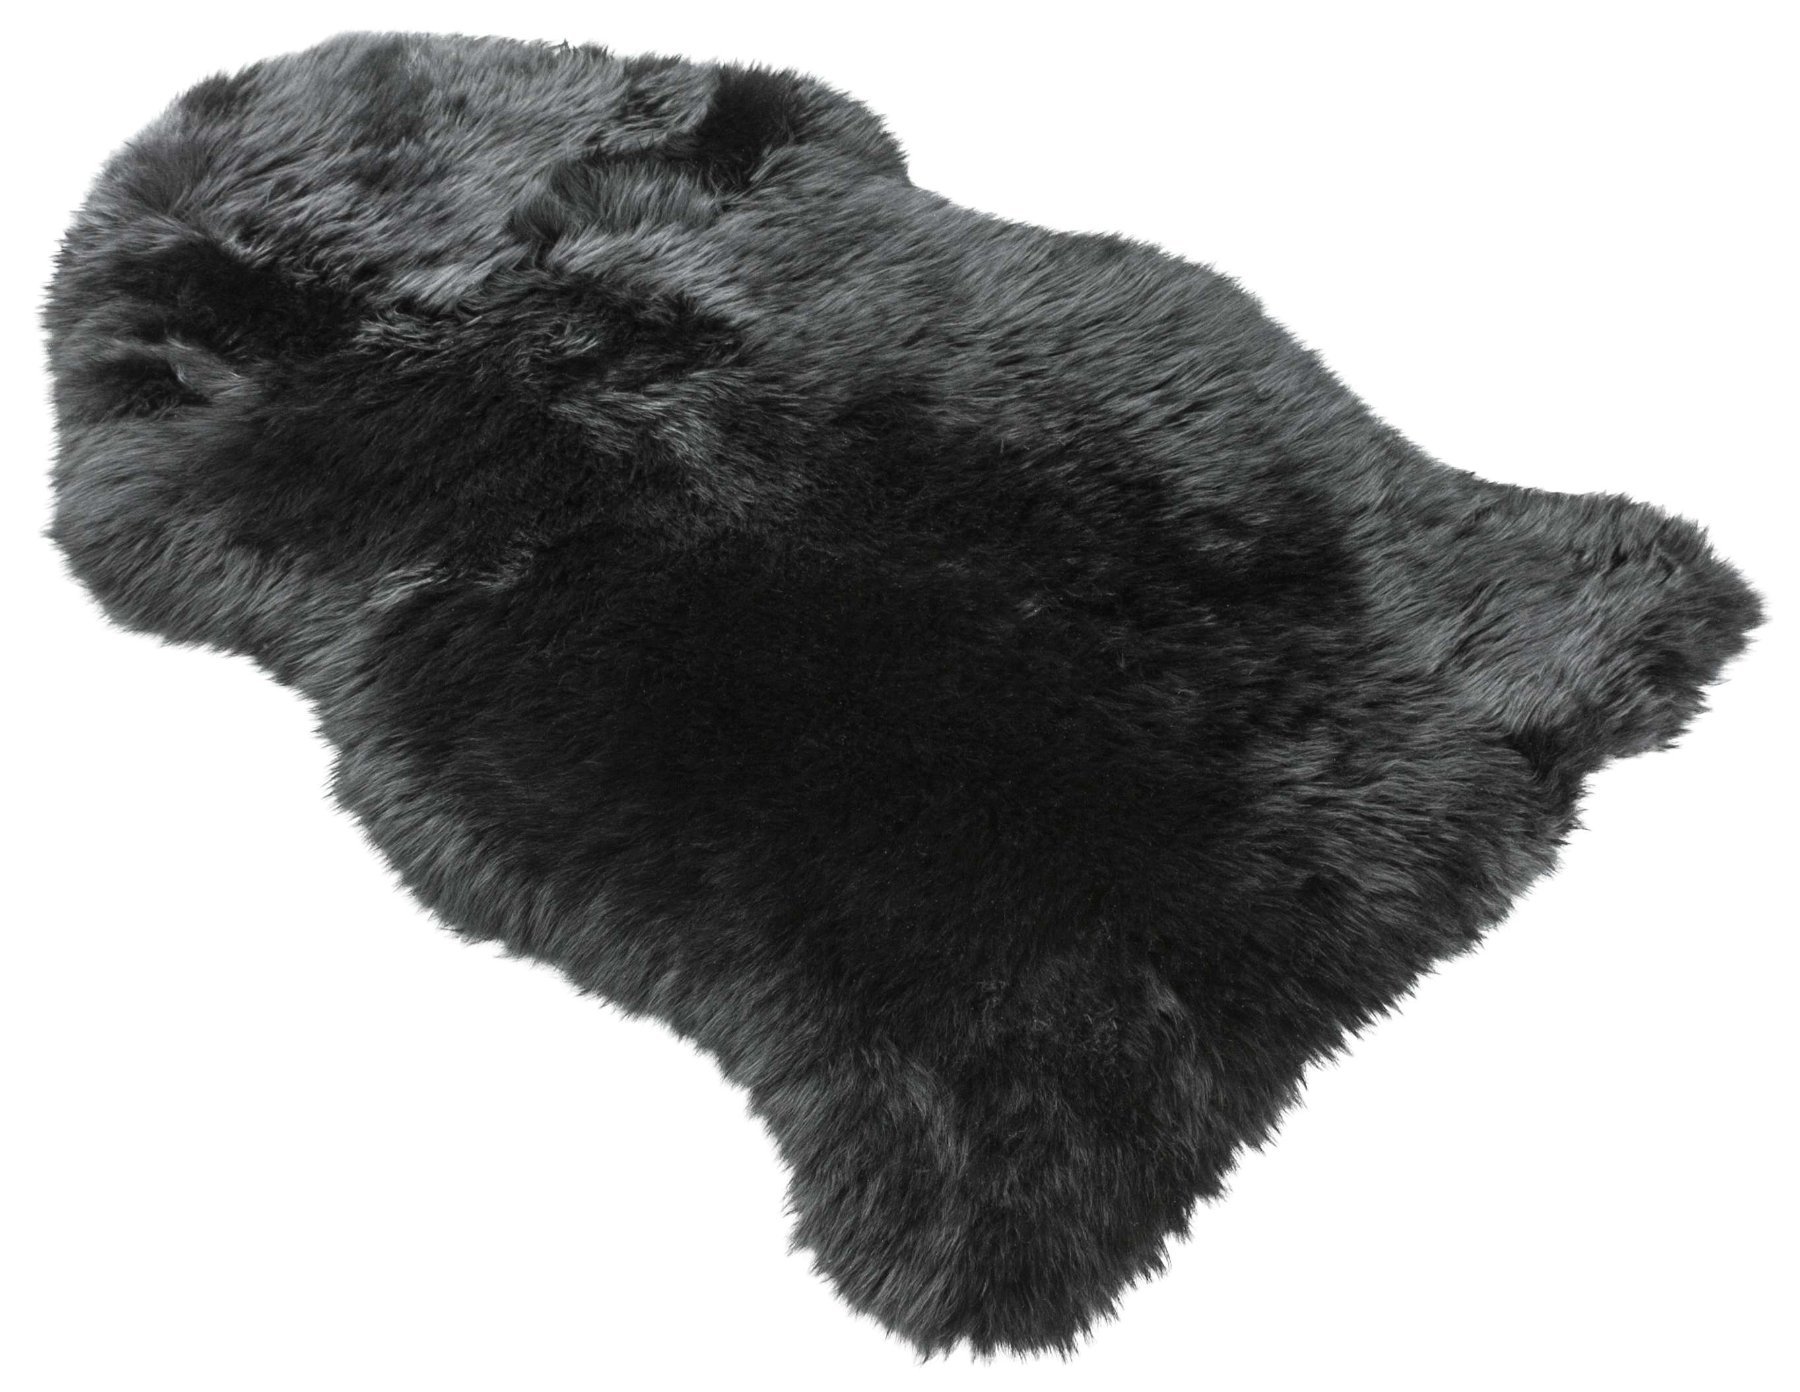 Tappeto in pelle d'agnello Blake nero 80-90cm fatto di pelle d'agnello naturale al 100%, altezza lana 50mm, ideale in soggiorno e camera da letto